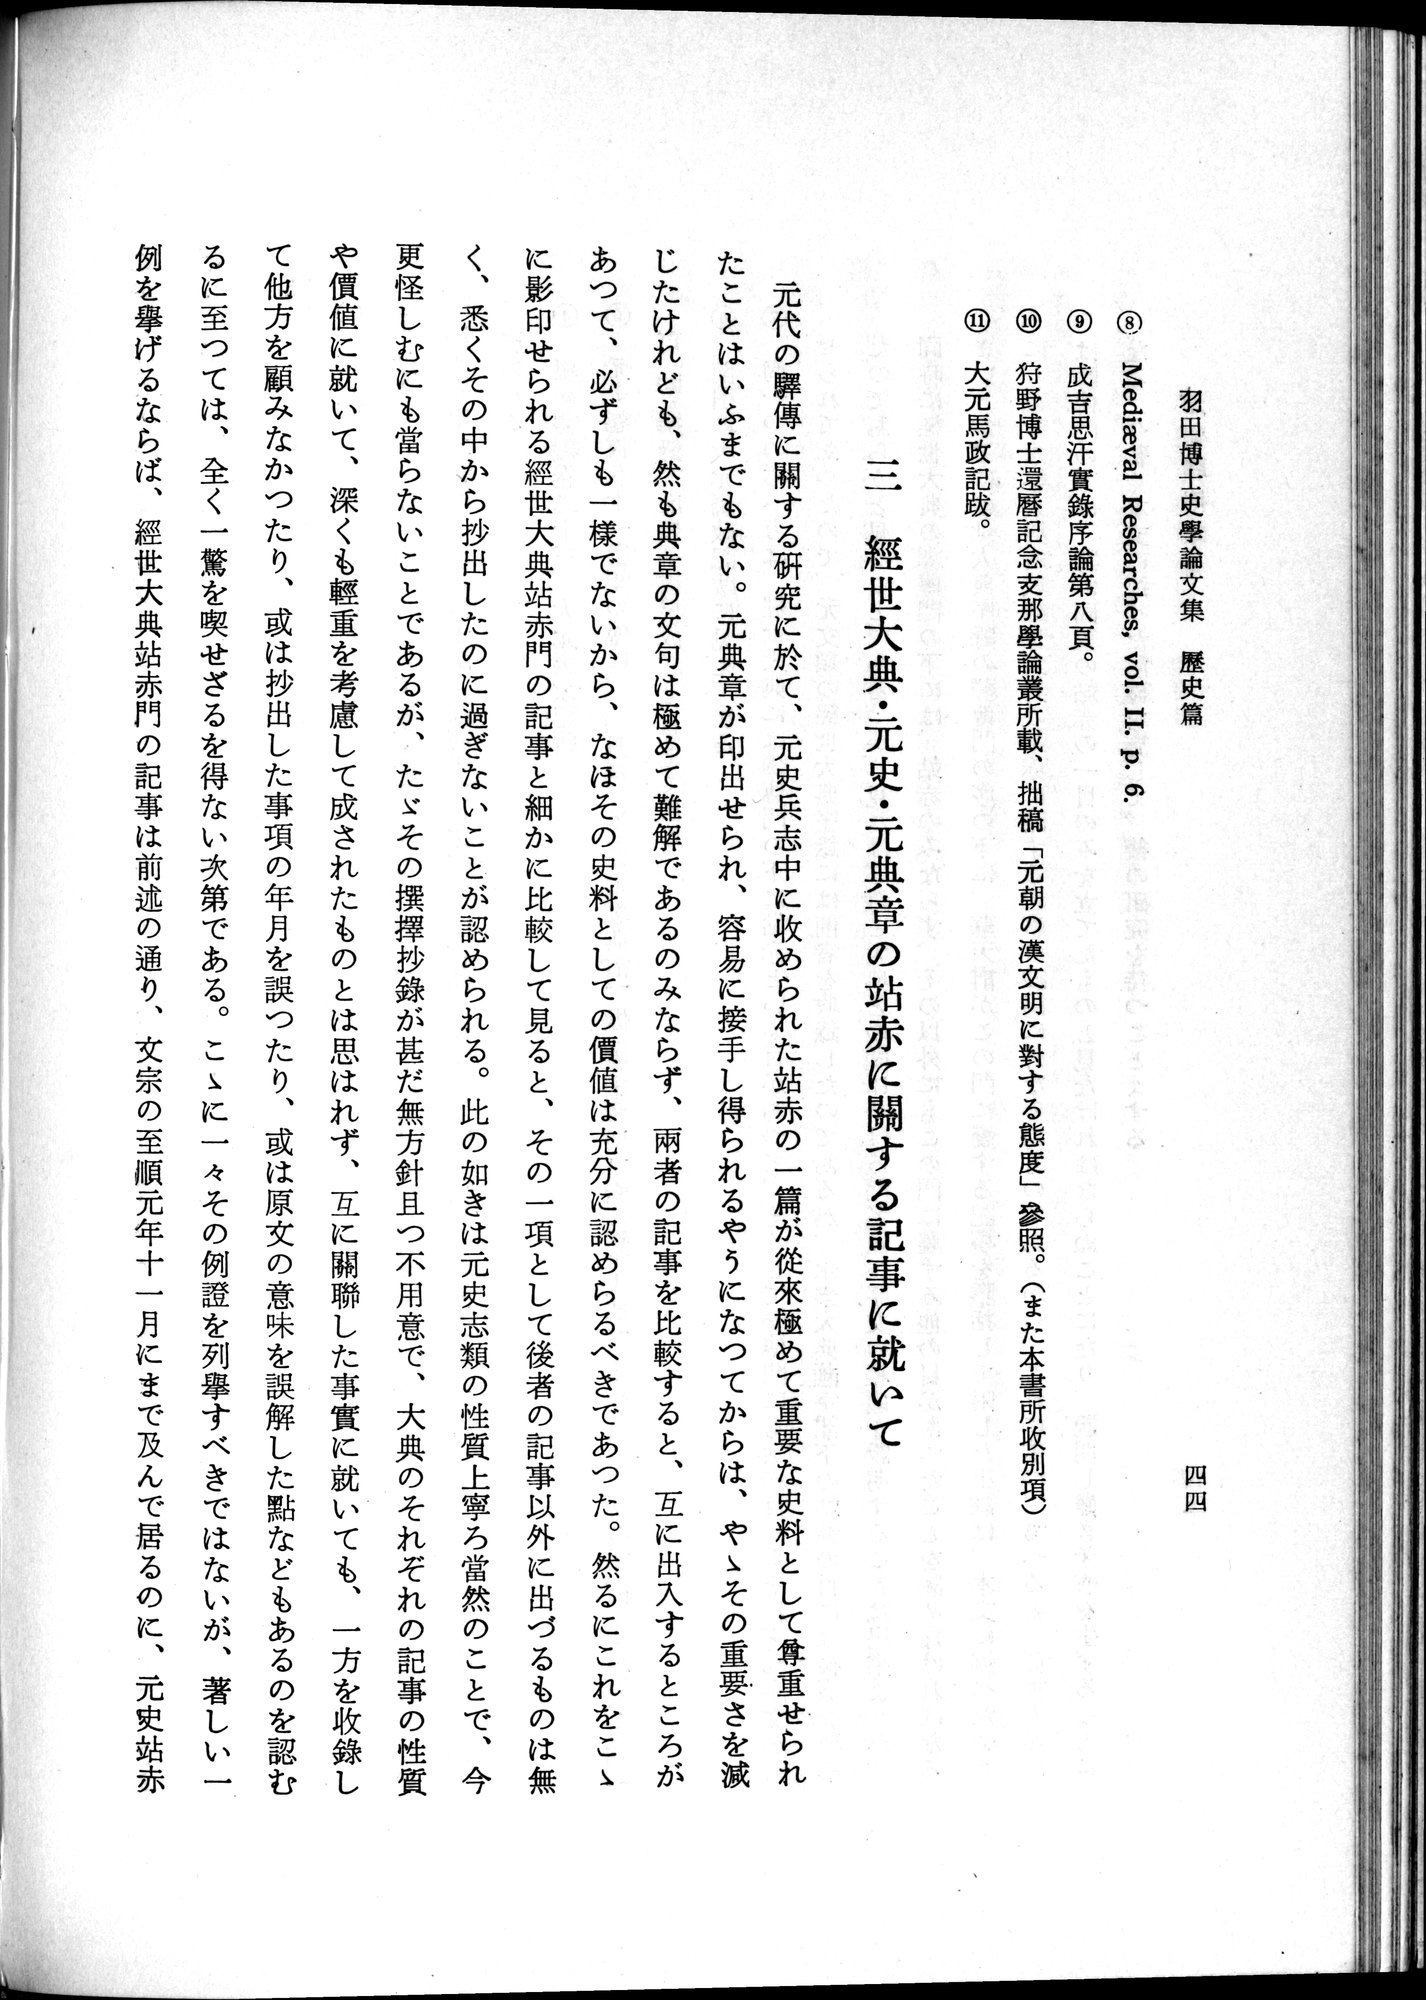 羽田博士史学論文集 : vol.1 / Page 82 (Grayscale High Resolution Image)